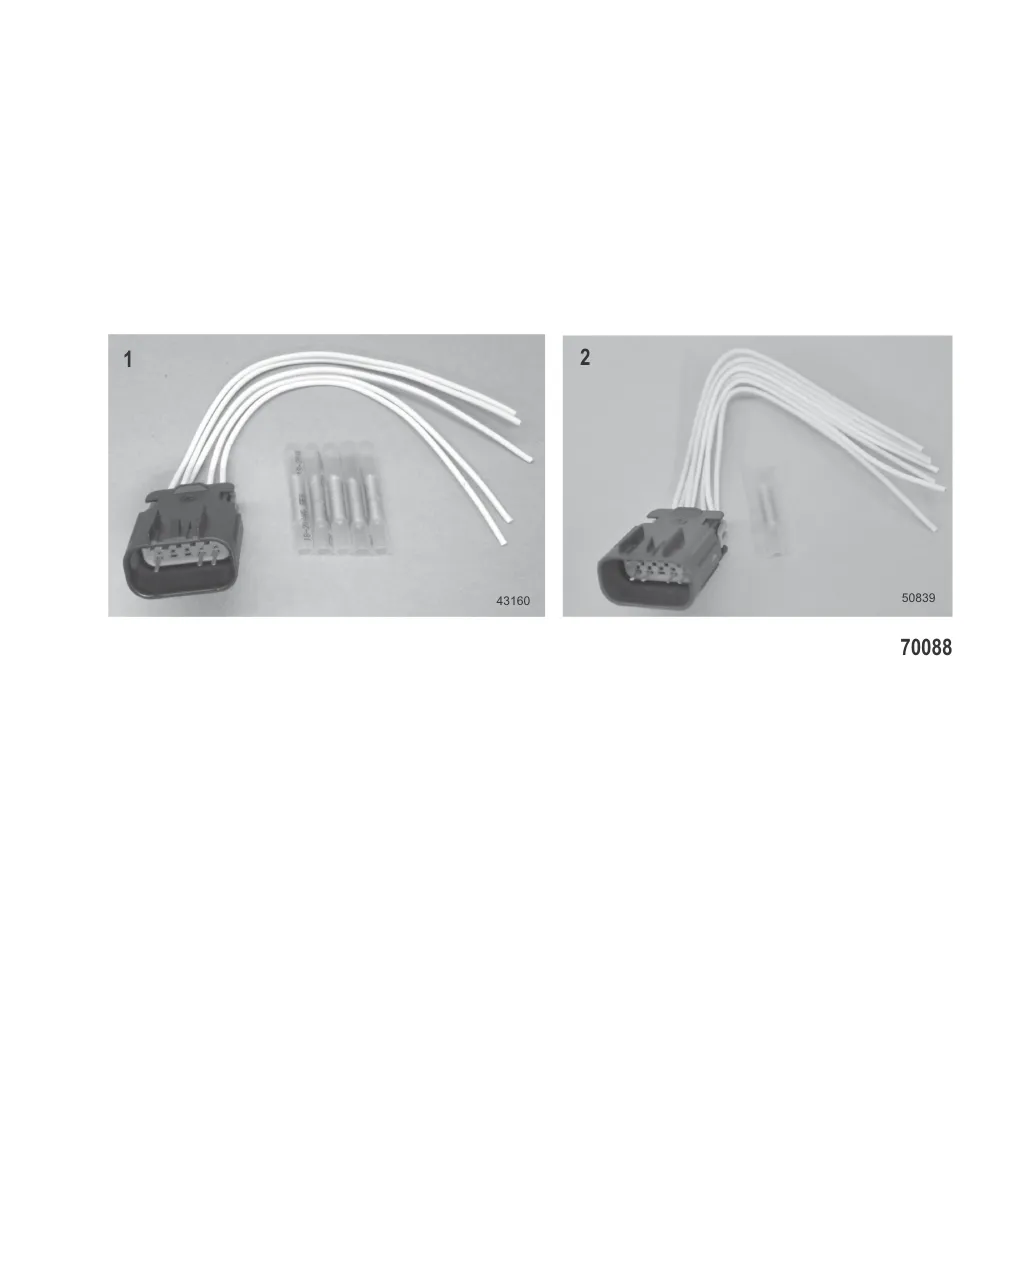 10-Pin Connectors